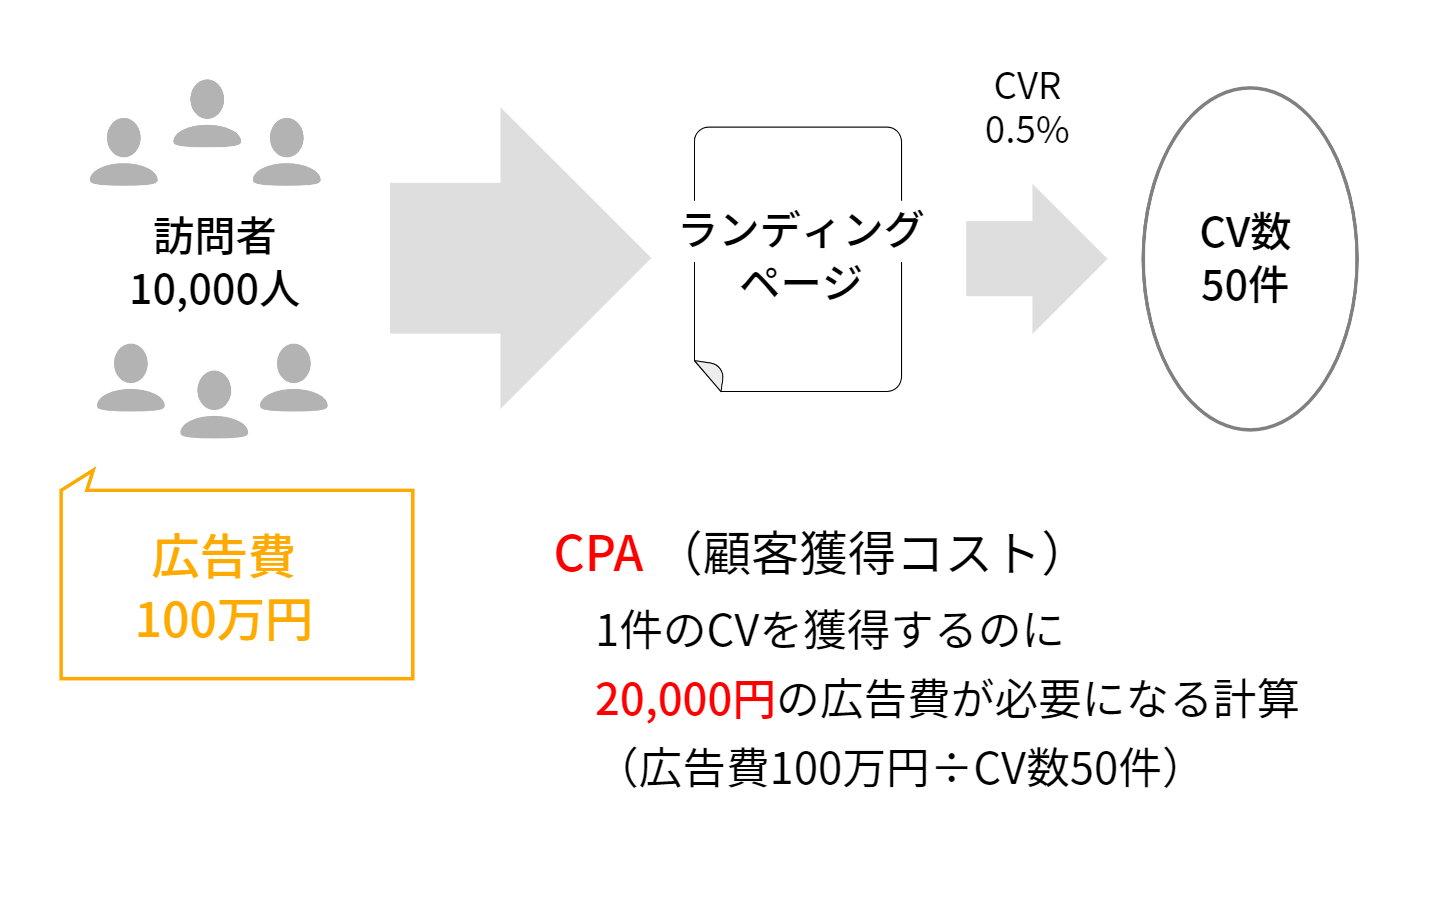 CVRとCPAの関係図